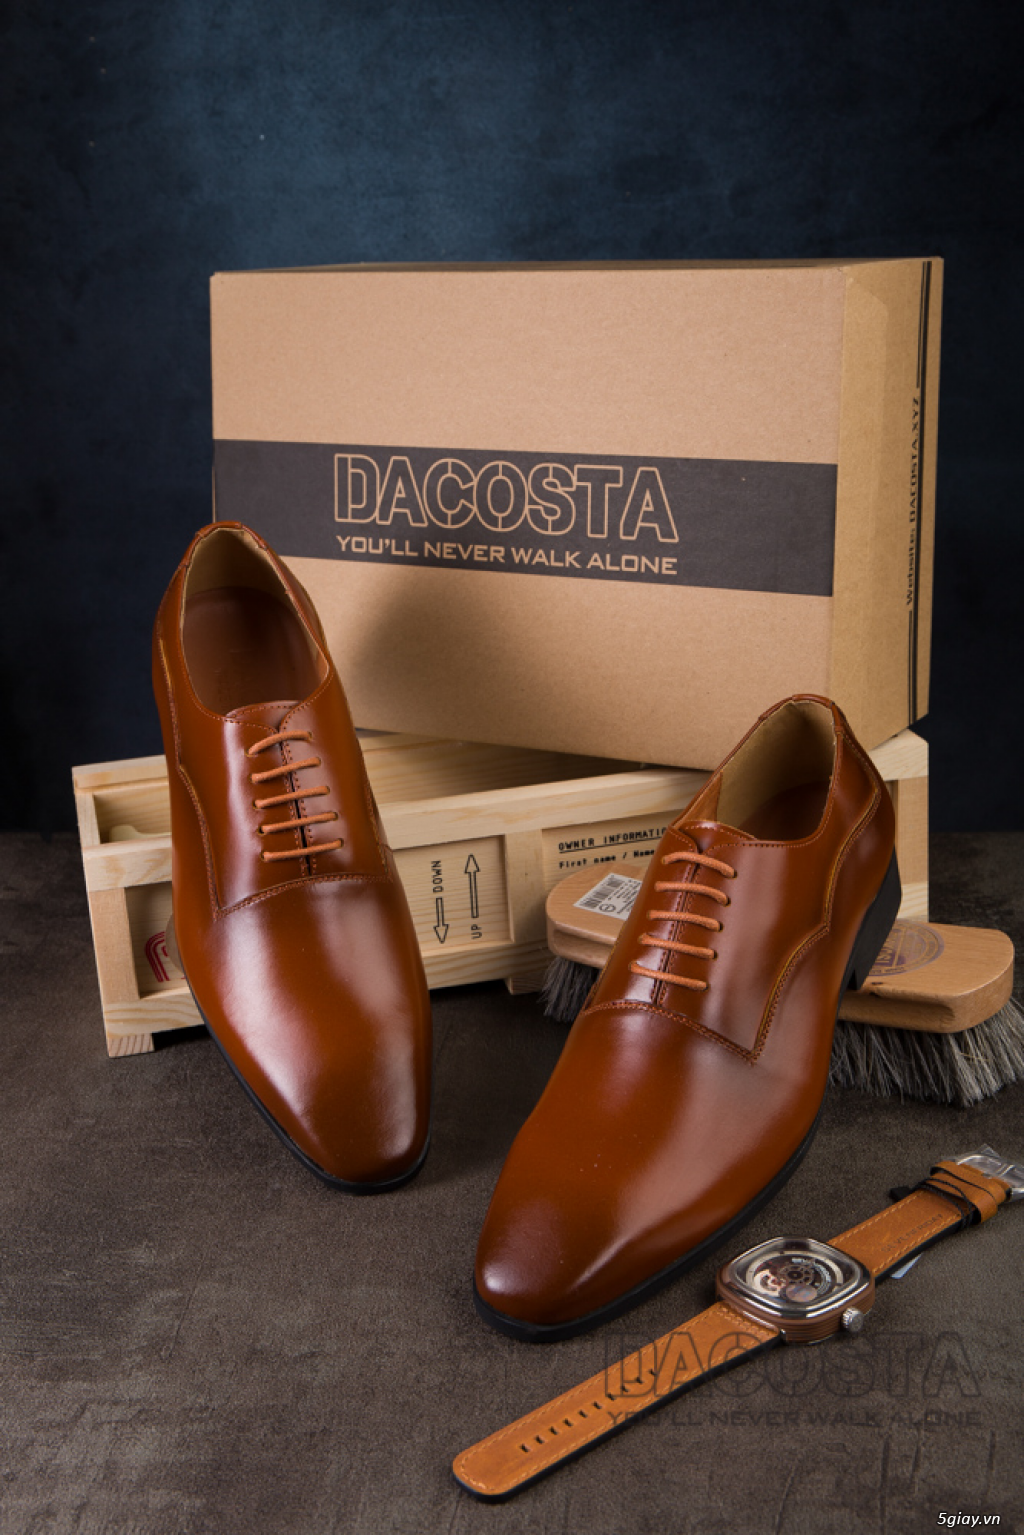 Tiệm Giày Dacosta - Những Mẫu Giày Tây Oxford Hot Nhất 2019 - 1